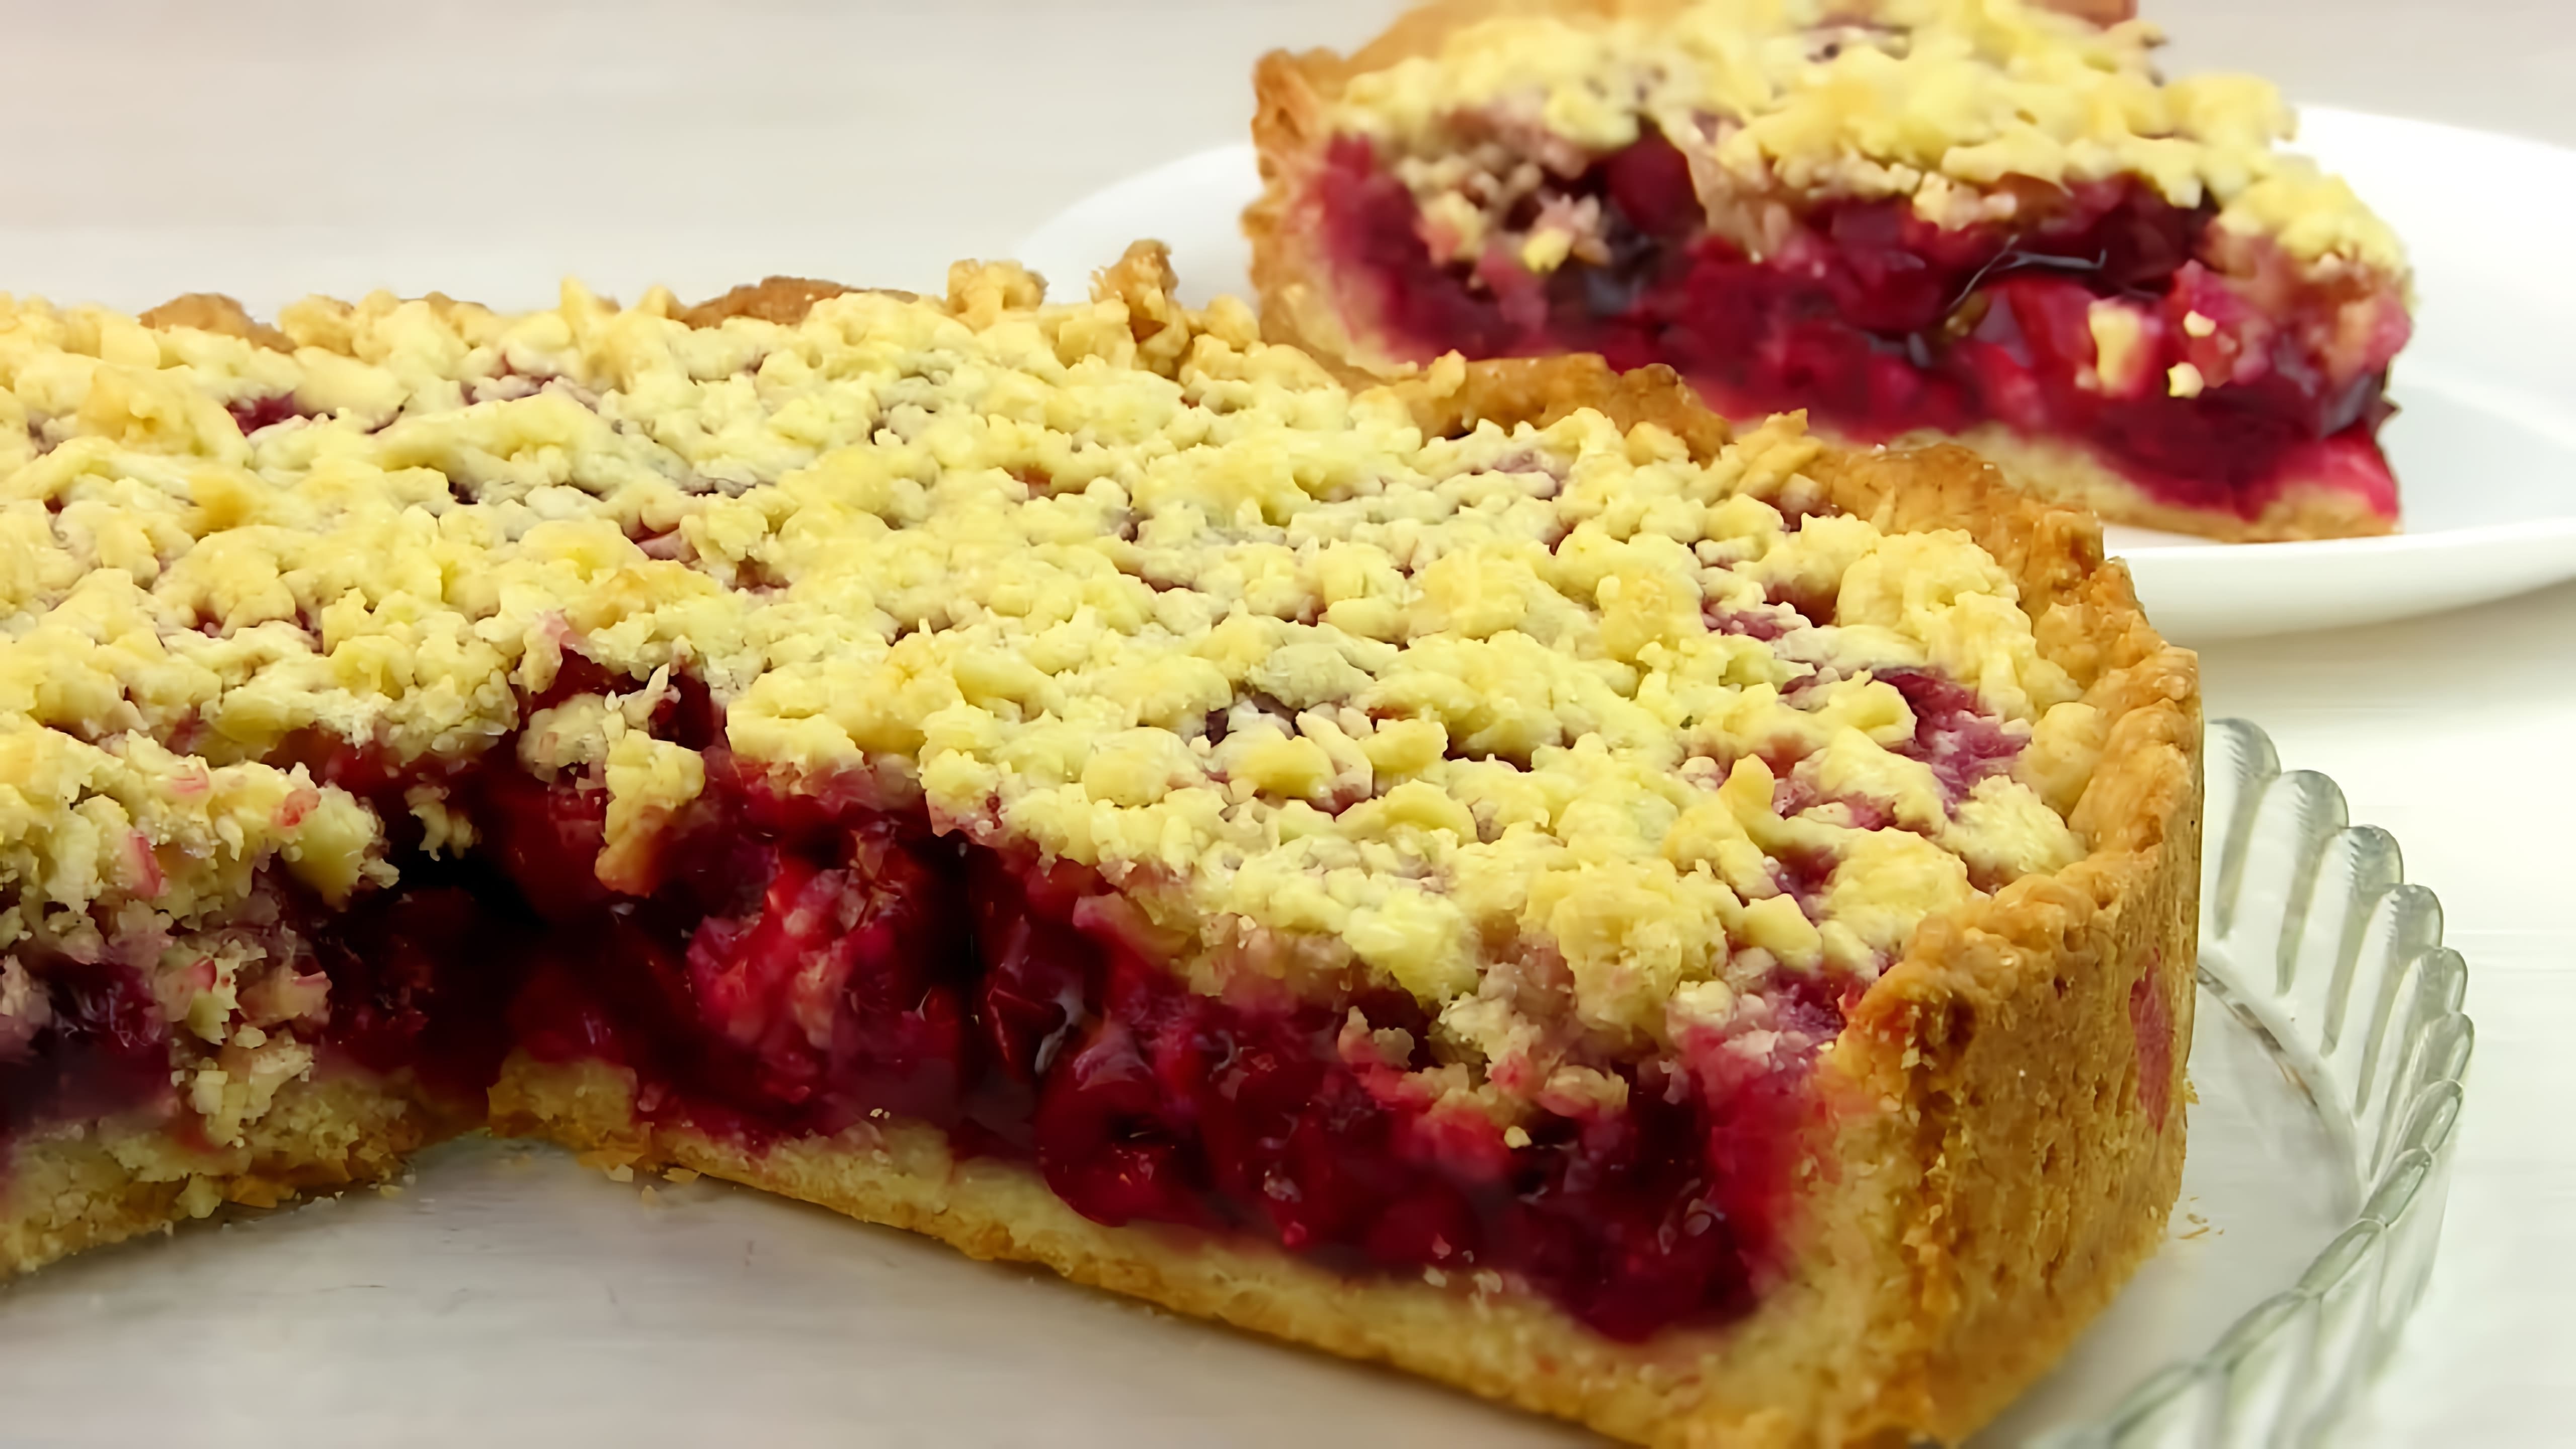 Видео описывает, как приготовить простой вишневый пирог, который легко приготовить, но очень вкусный